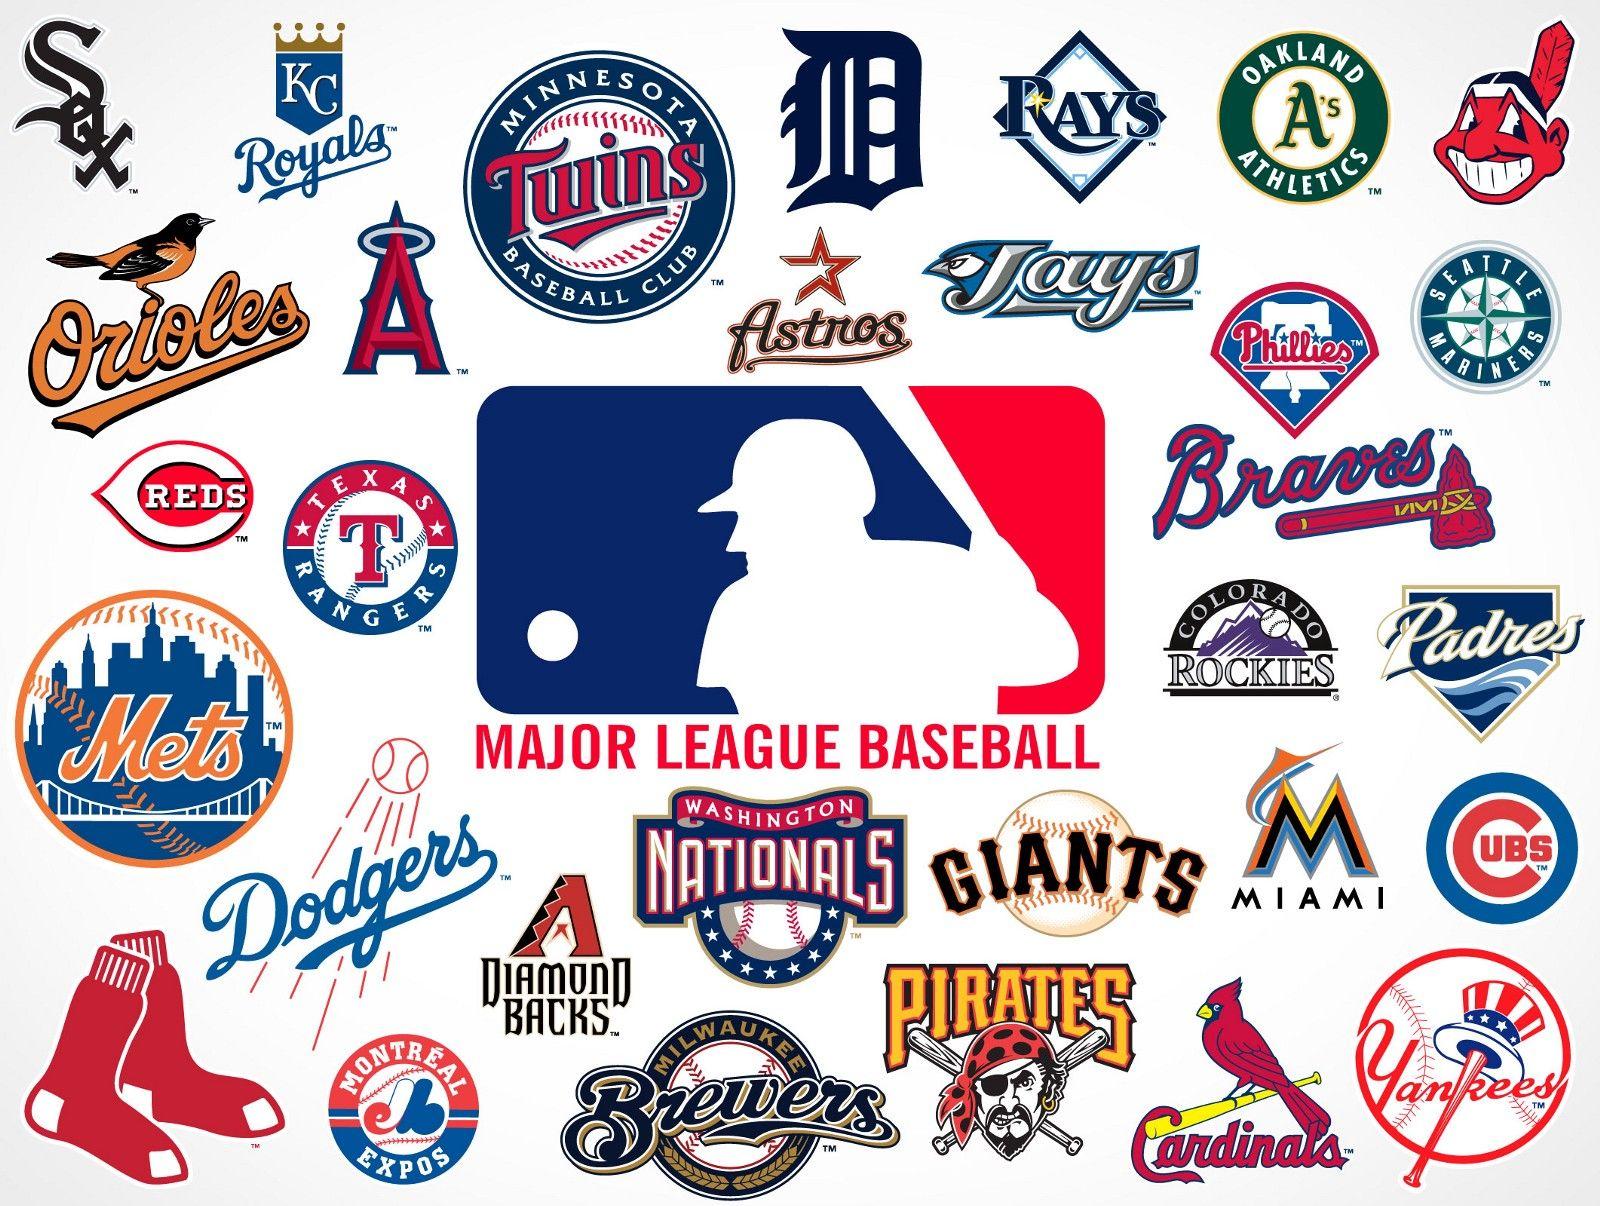 Major League Baseball Logo - Major League Baseball Logo Ranking